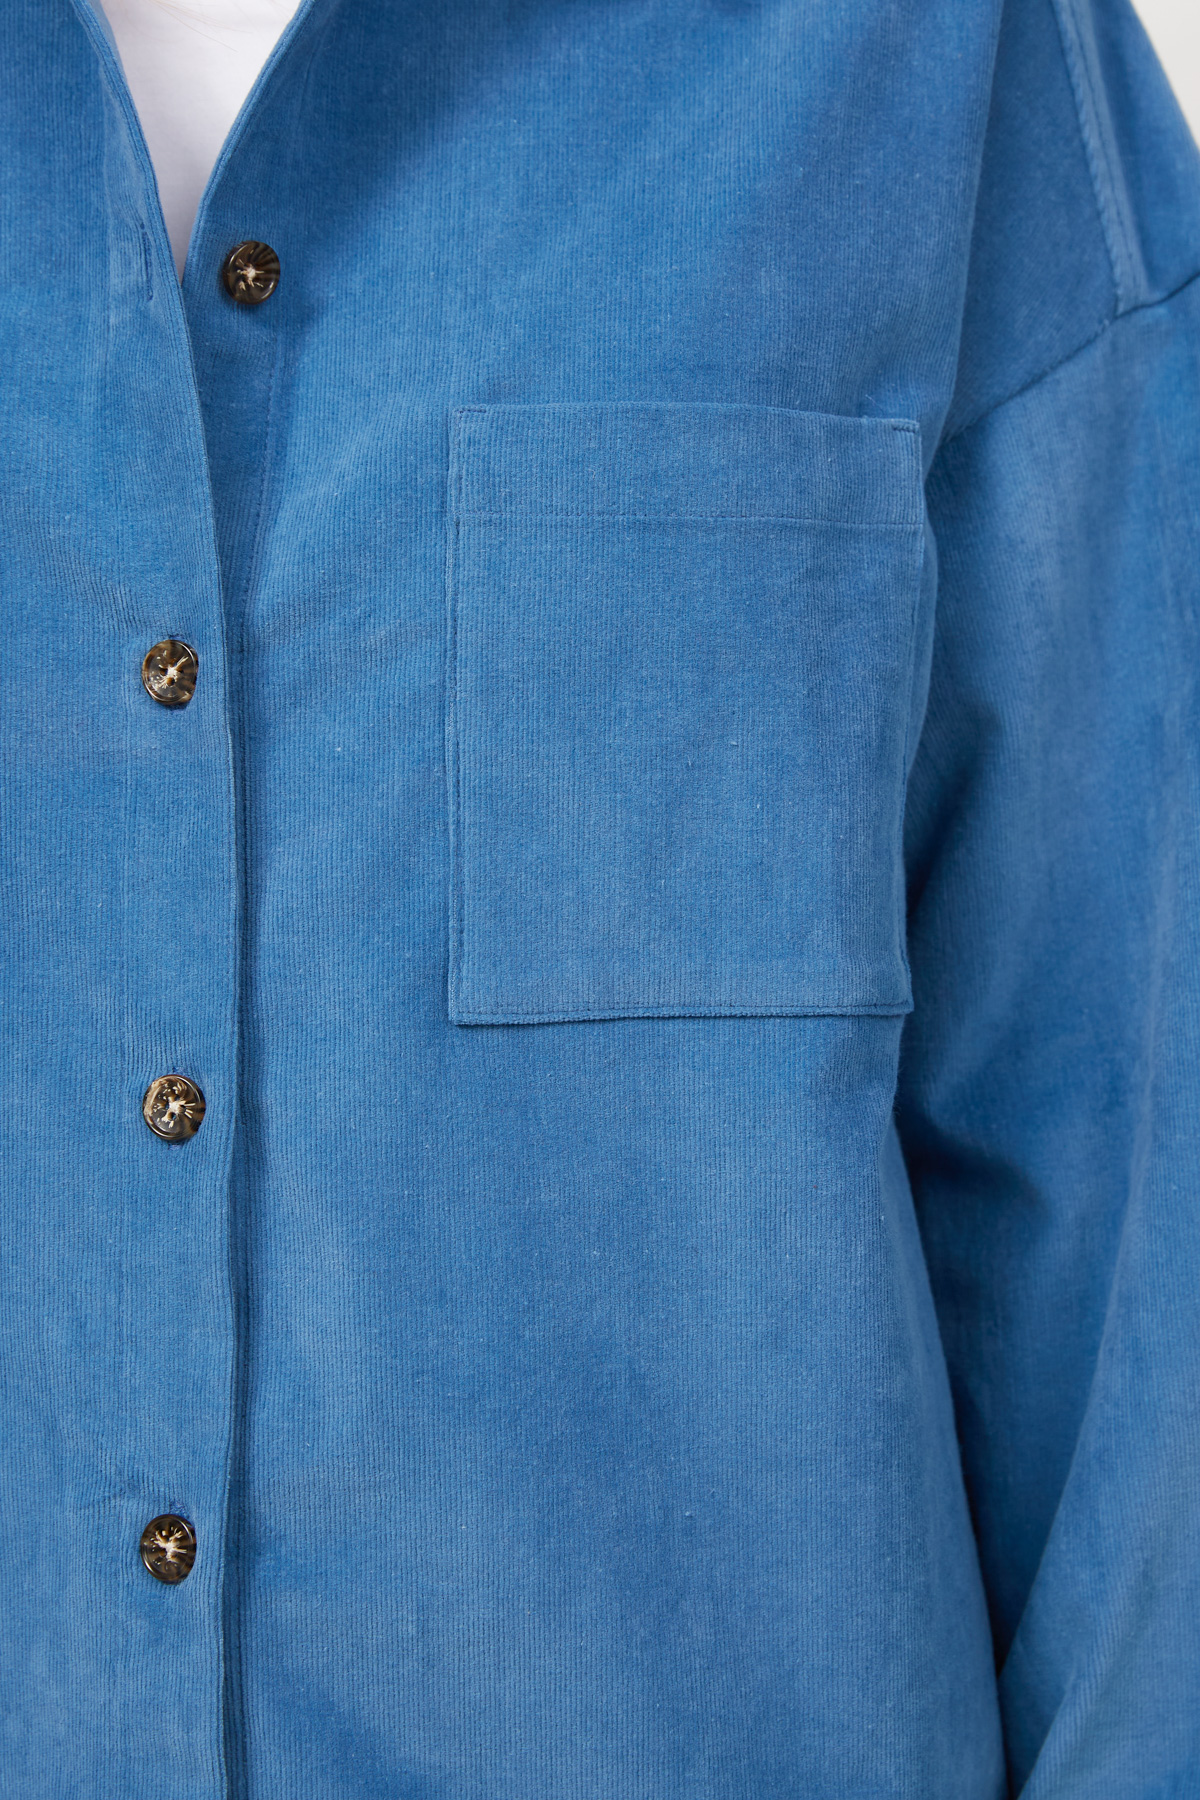 Oversized blue shirt jacket , photo 5